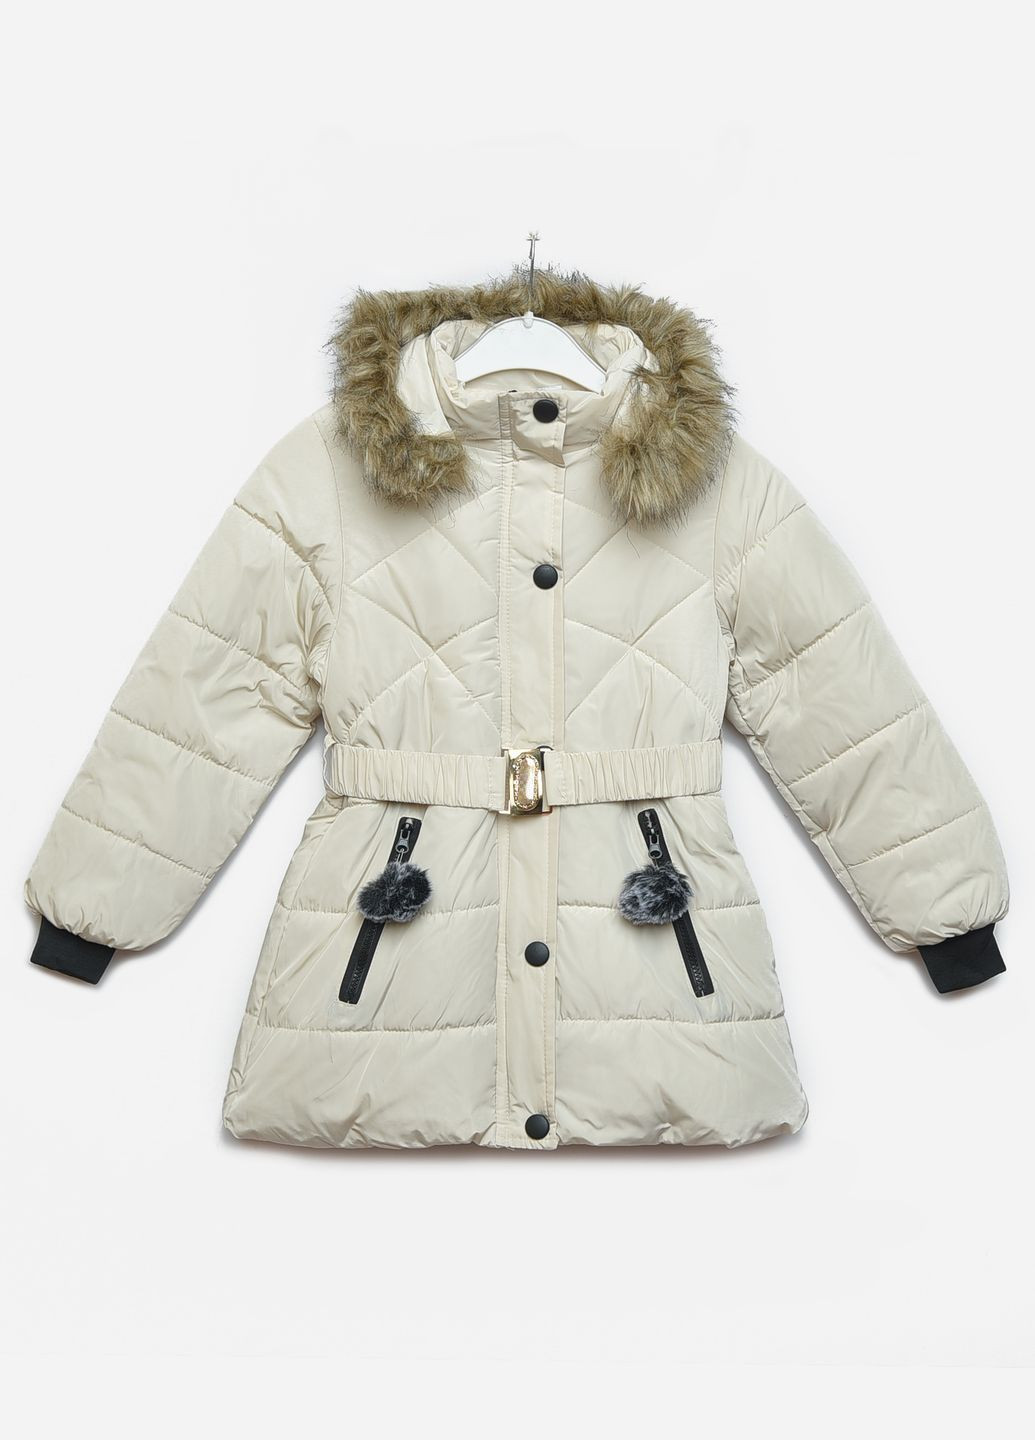 Молочная зимняя куртка детская зимняя для девочки молочного цвета Let's Shop